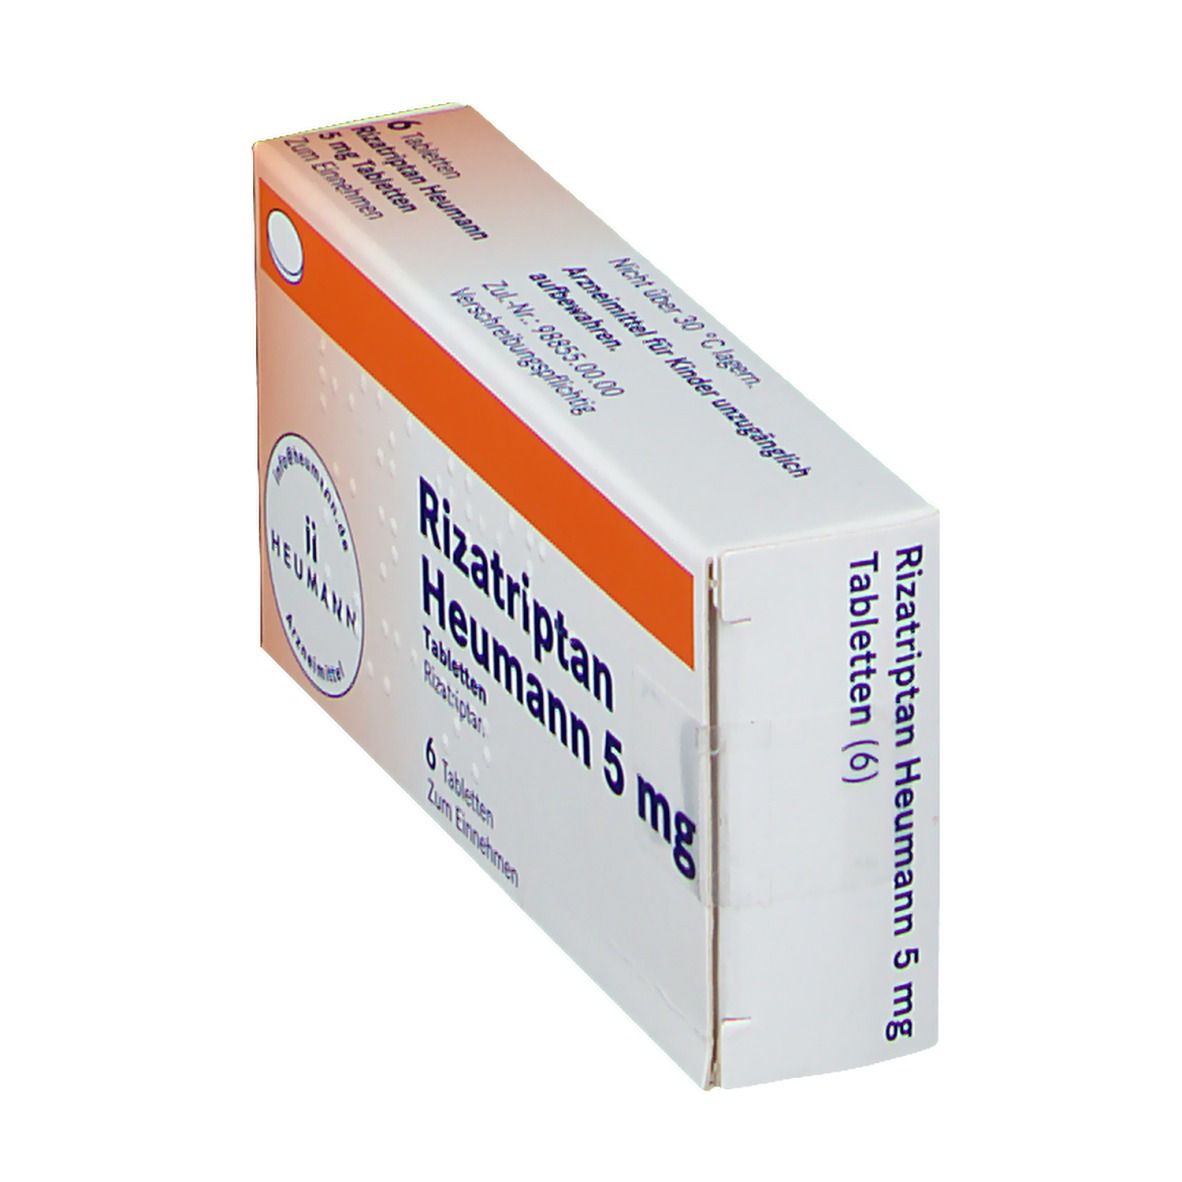 Rizatriptan Heumann 5 mg